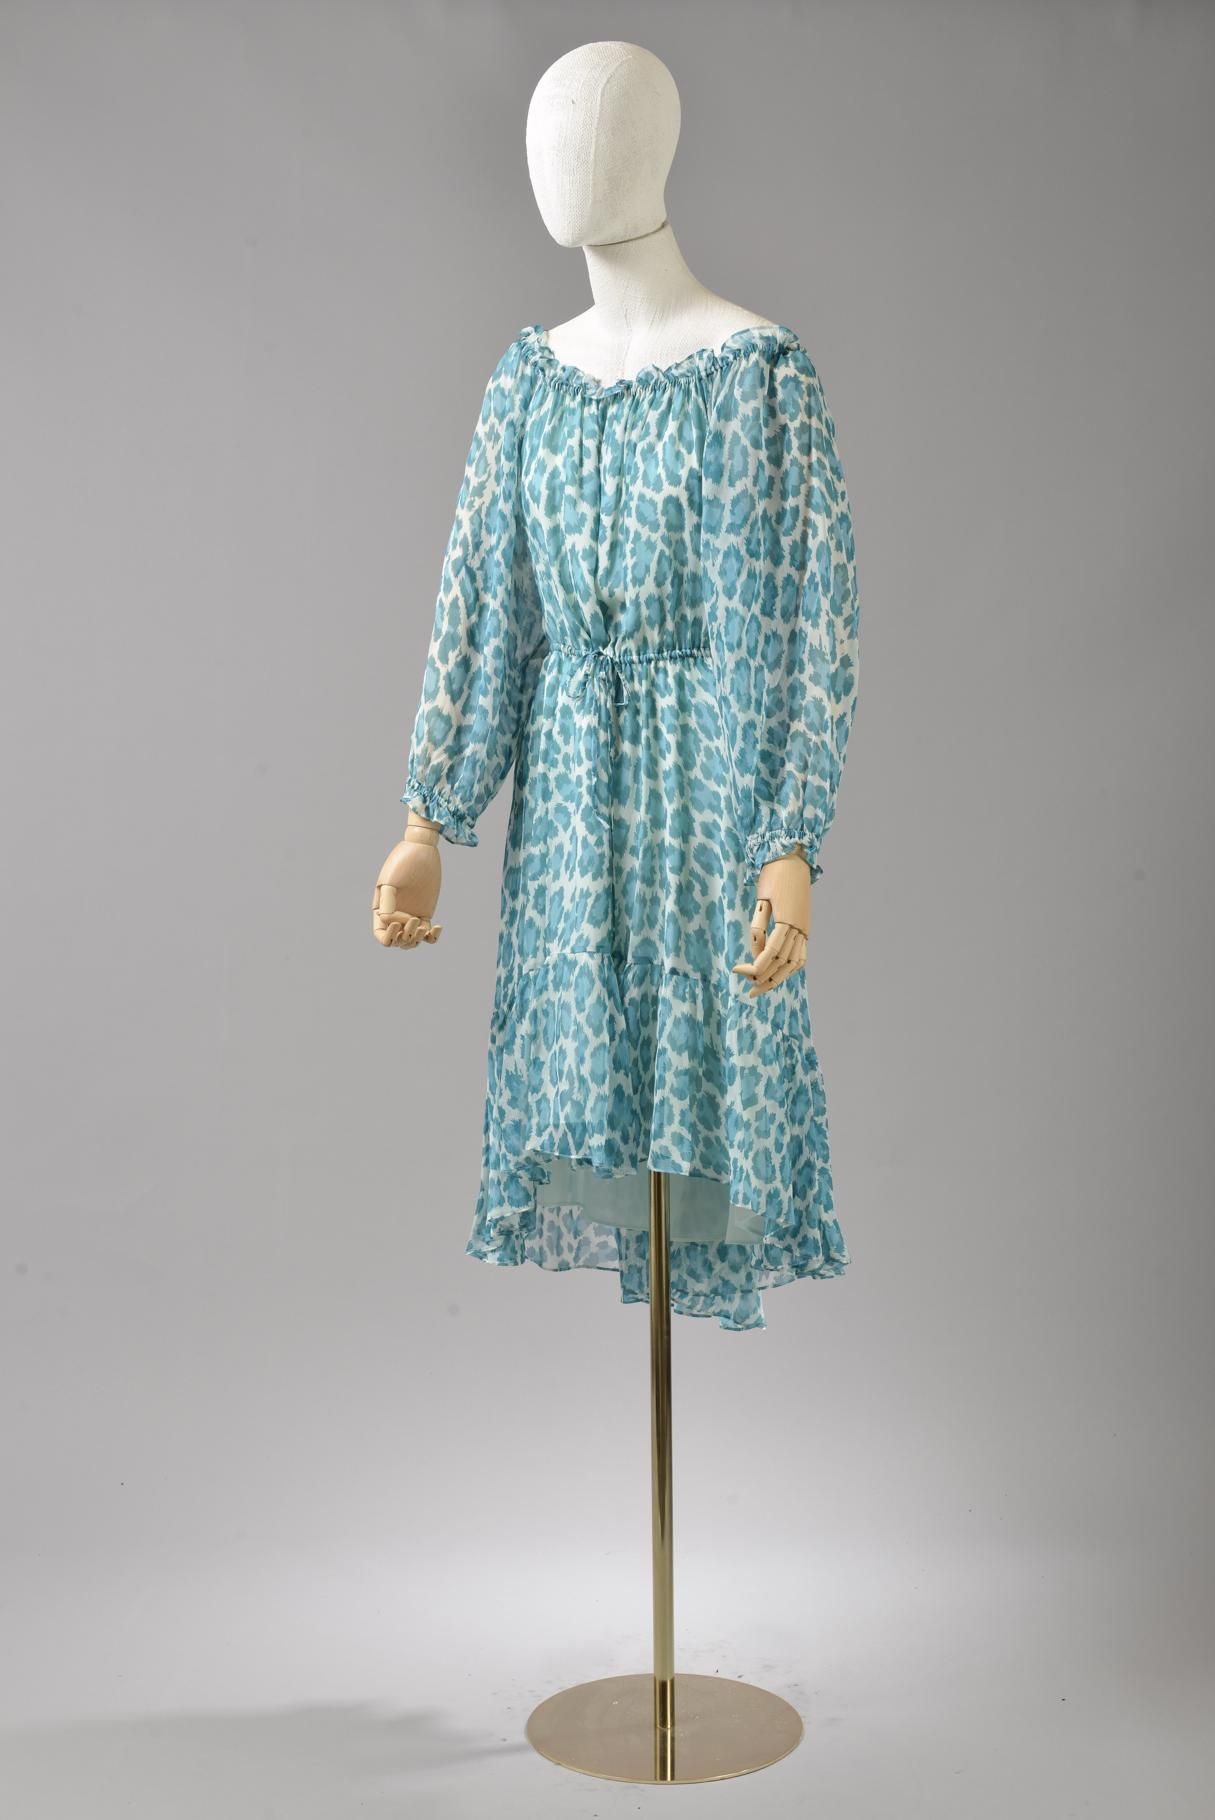 Null *尺寸M DVF - Diane Von Fürstenberg

套装包括。

-半透明丝质连衣裙，型号为 "DVF Camilla Dress"，&hellip;